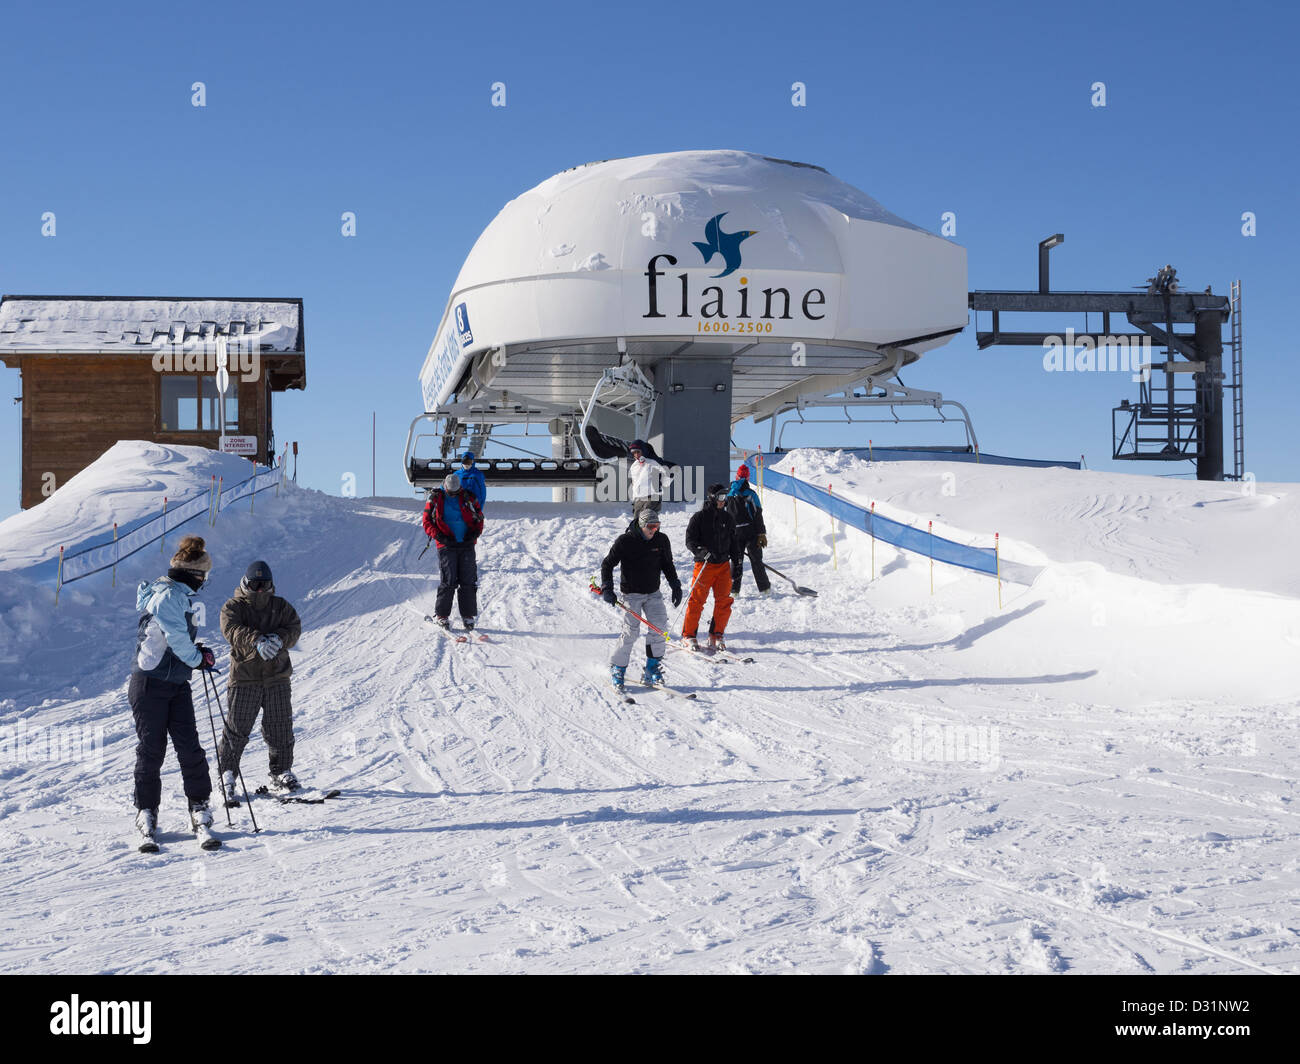 Le débarquement des skieurs en haut du télésiège des Grands Vans dans le  domaine skiable du Grand Massif dans les Alpes françaises. Flaine,  Rhône-Alpes, France Photo Stock - Alamy